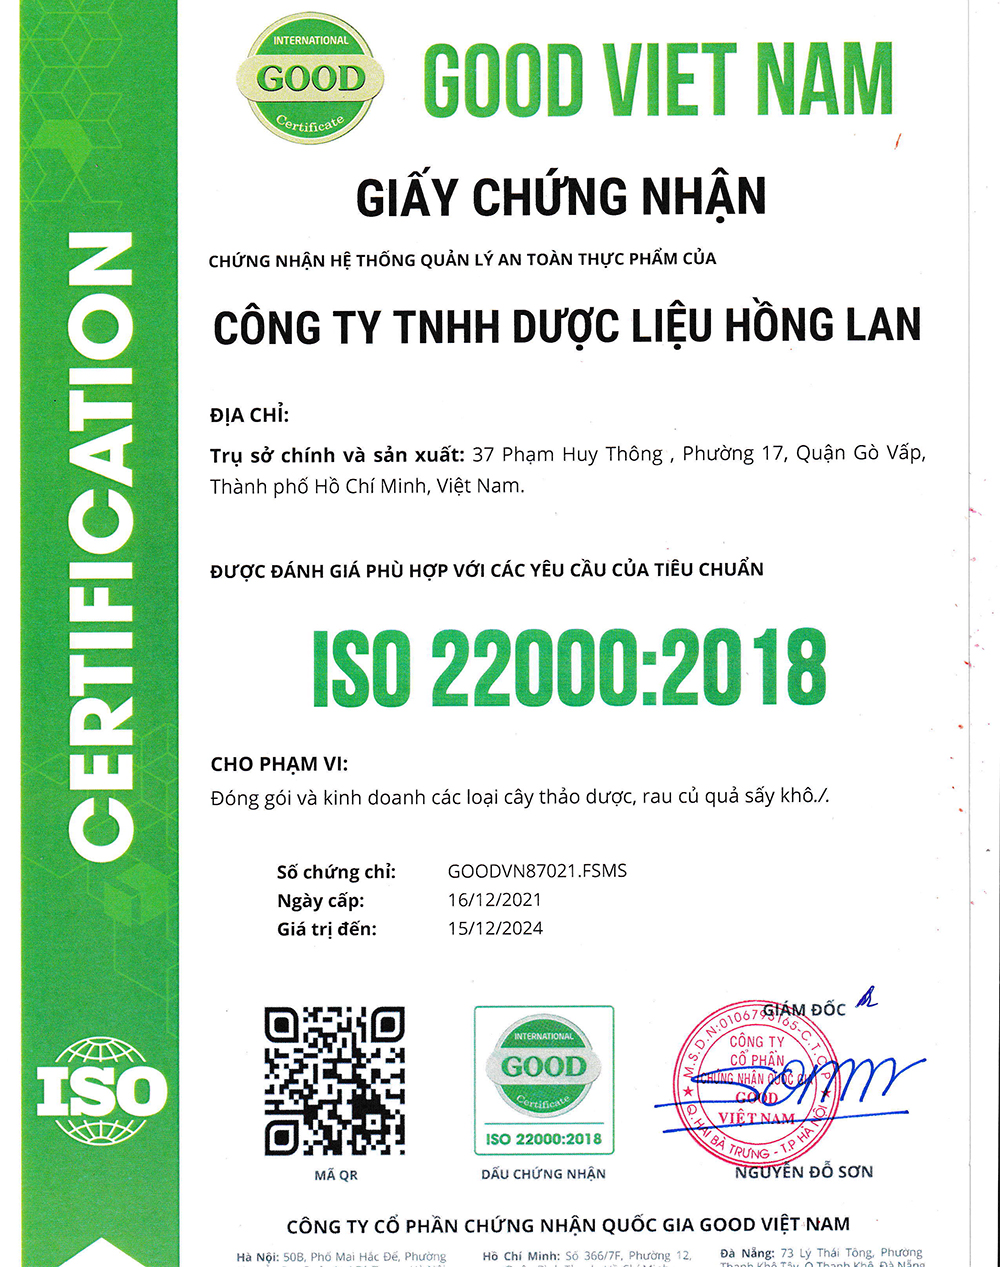 Trà túi lọc Hỗ Trợ Điều Trị Bệnh Gout được sản xuất bởi Công ty TNHH Dược Liệu Hồng Lan theo hệ thống quản lý an toàn thực phẩm ISO 22000:2018 được cấp bởi công ty cổ phần chứng nhận Quốc Gia Good Việt Nam (Good Viet Nam Certification Joint Stock Company)